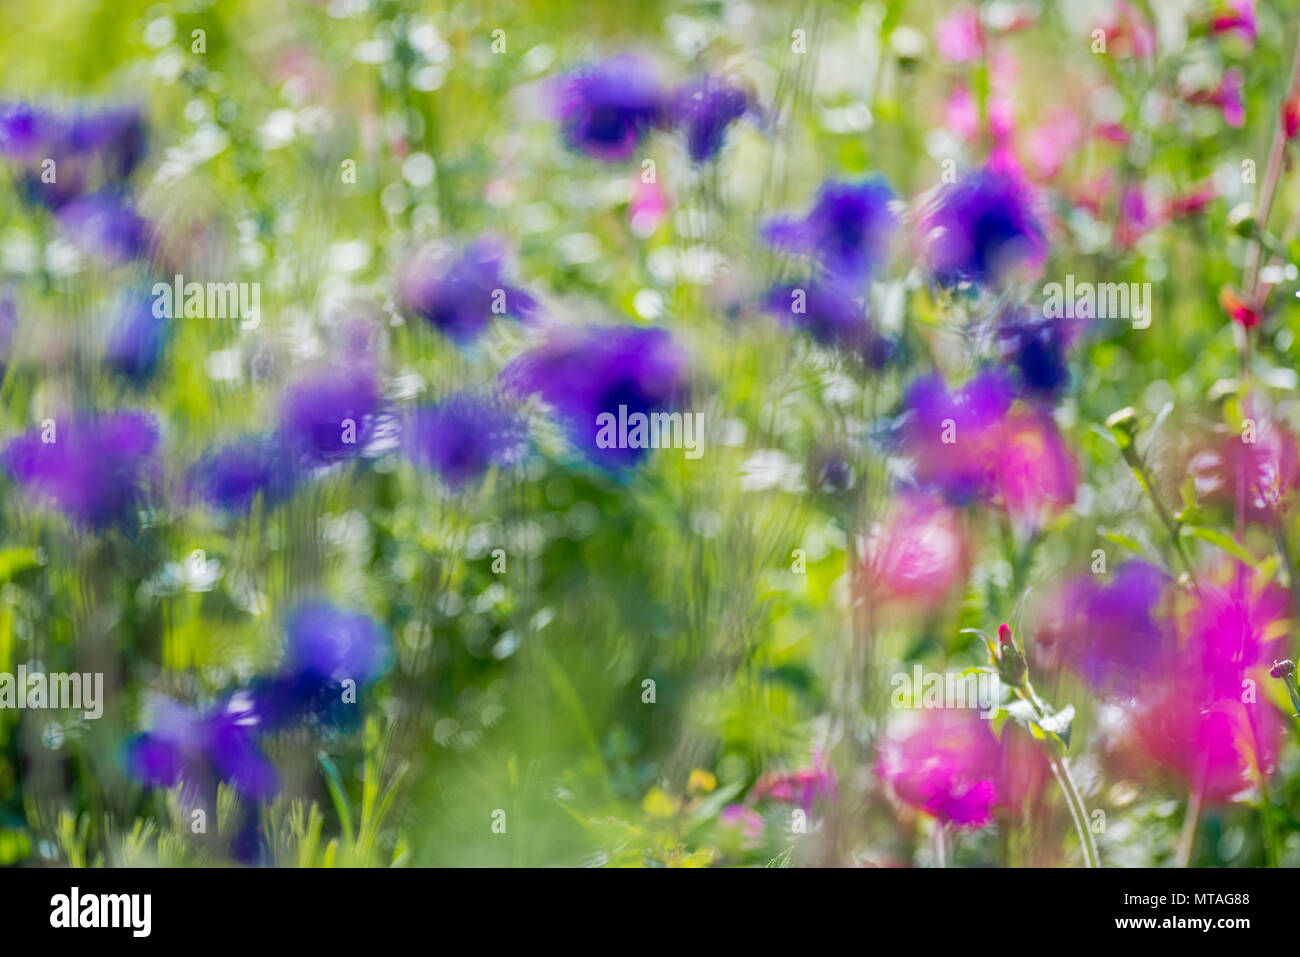 Des problèmes de mise au point des images de fleurs colorées simular à une peinture impressionniste de Monet. Banque D'Images